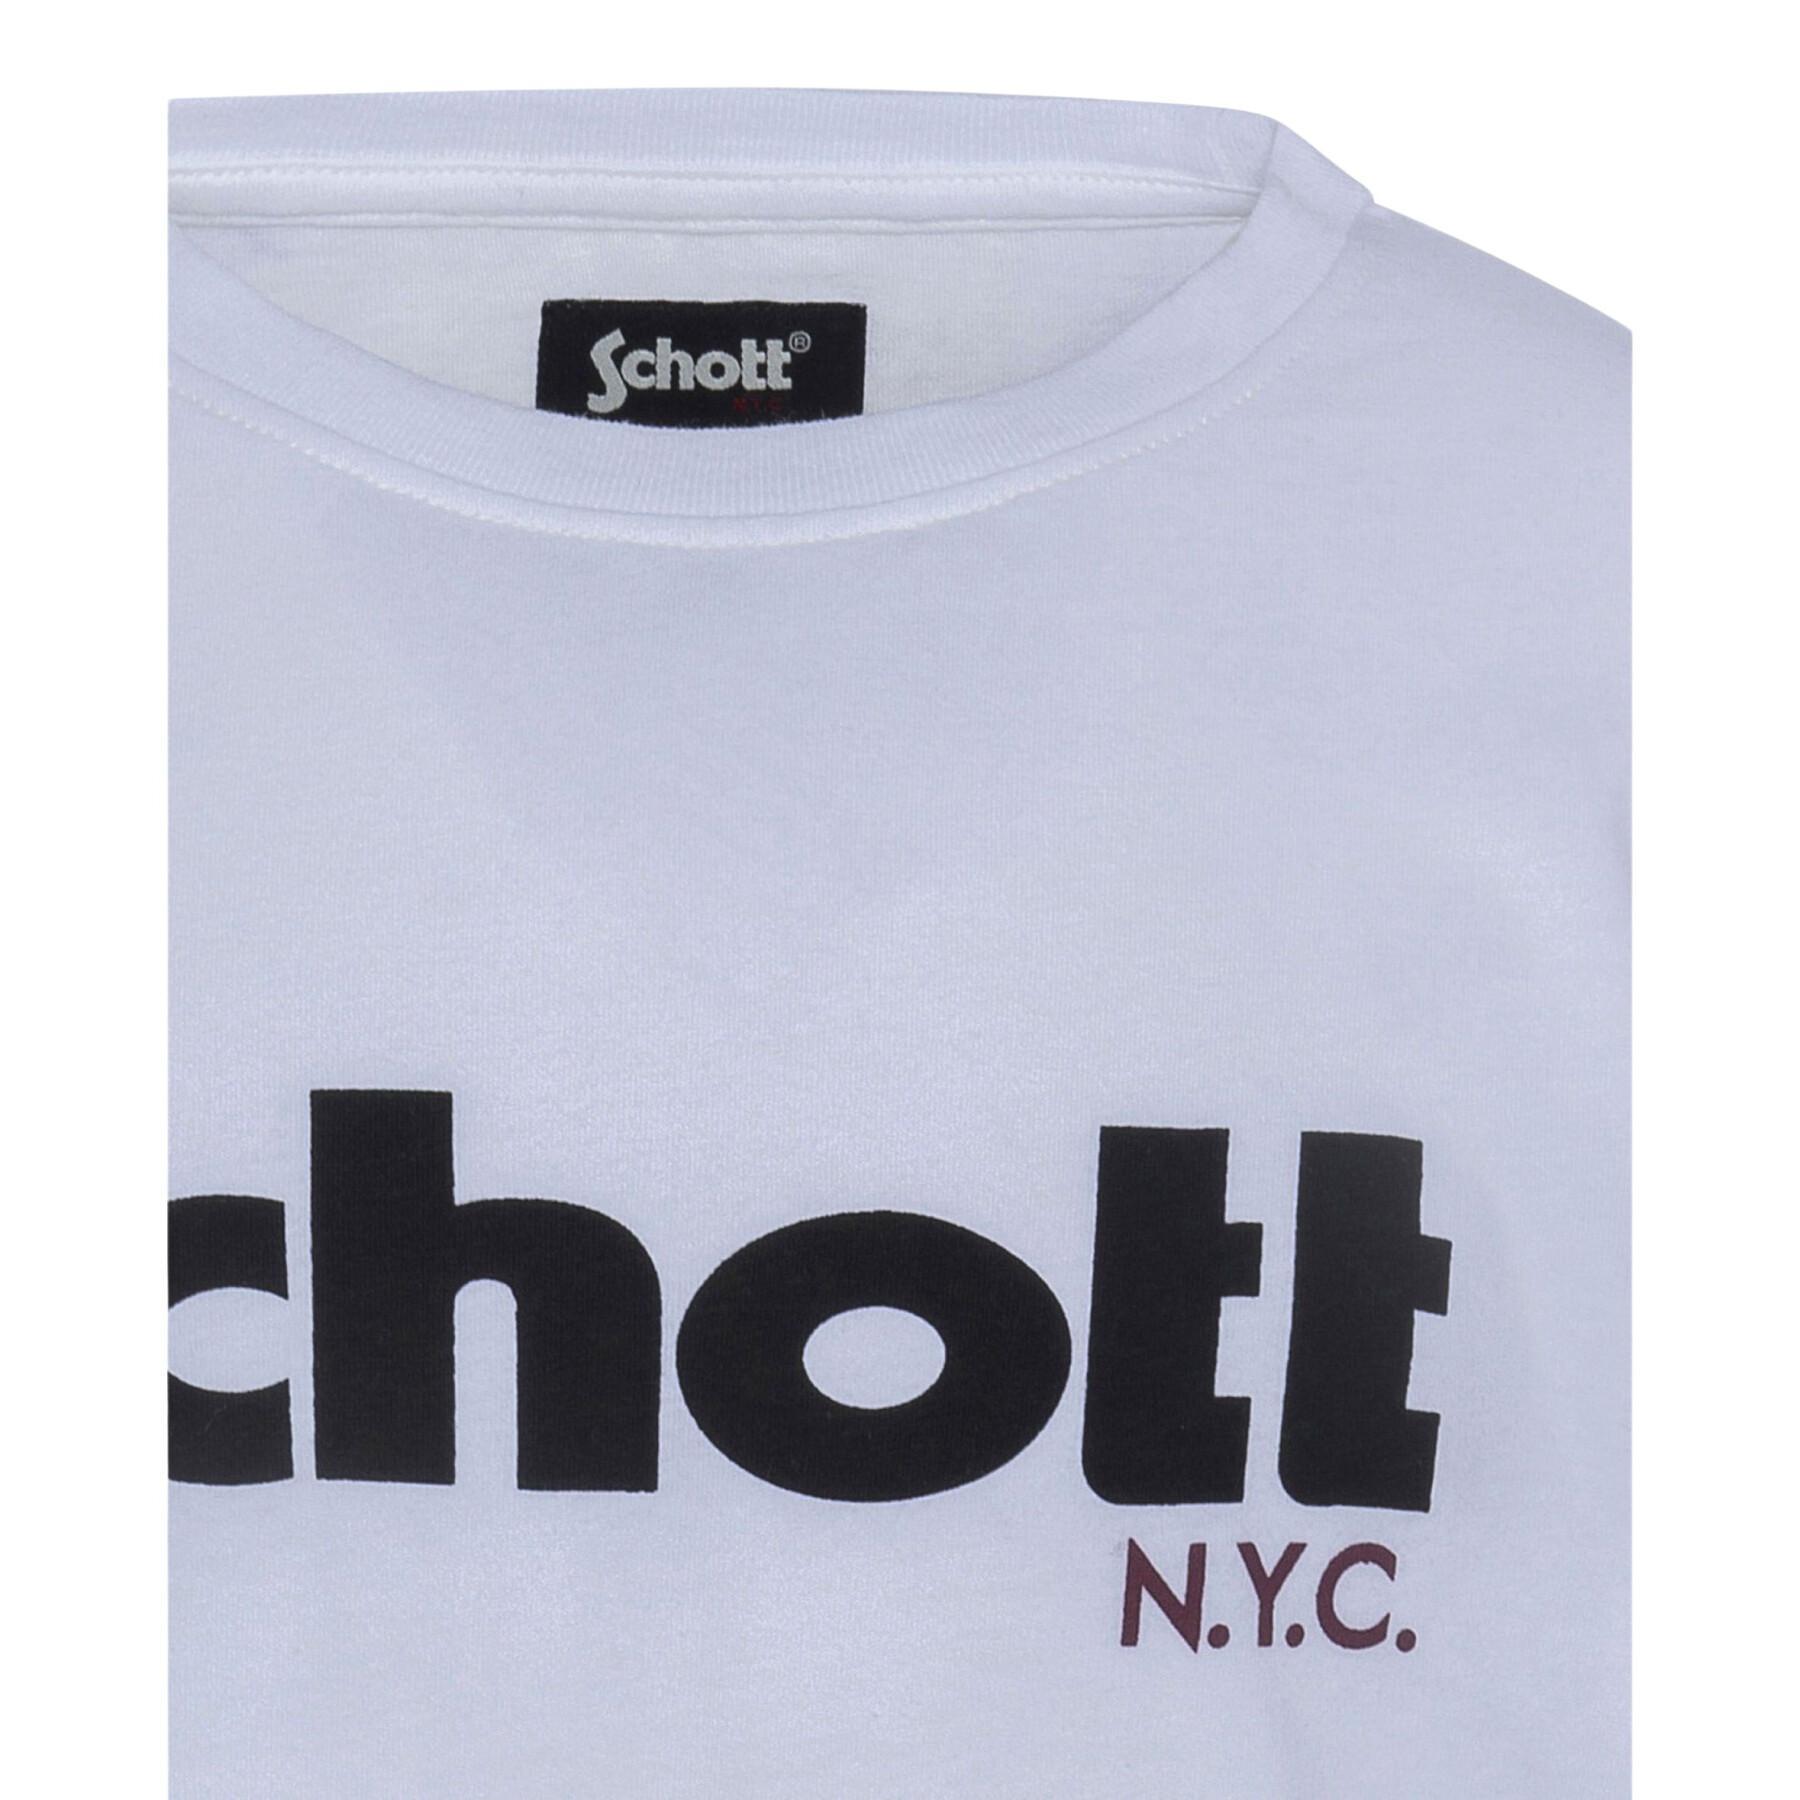 Kinder-T-shirt met lange mouwen Schott